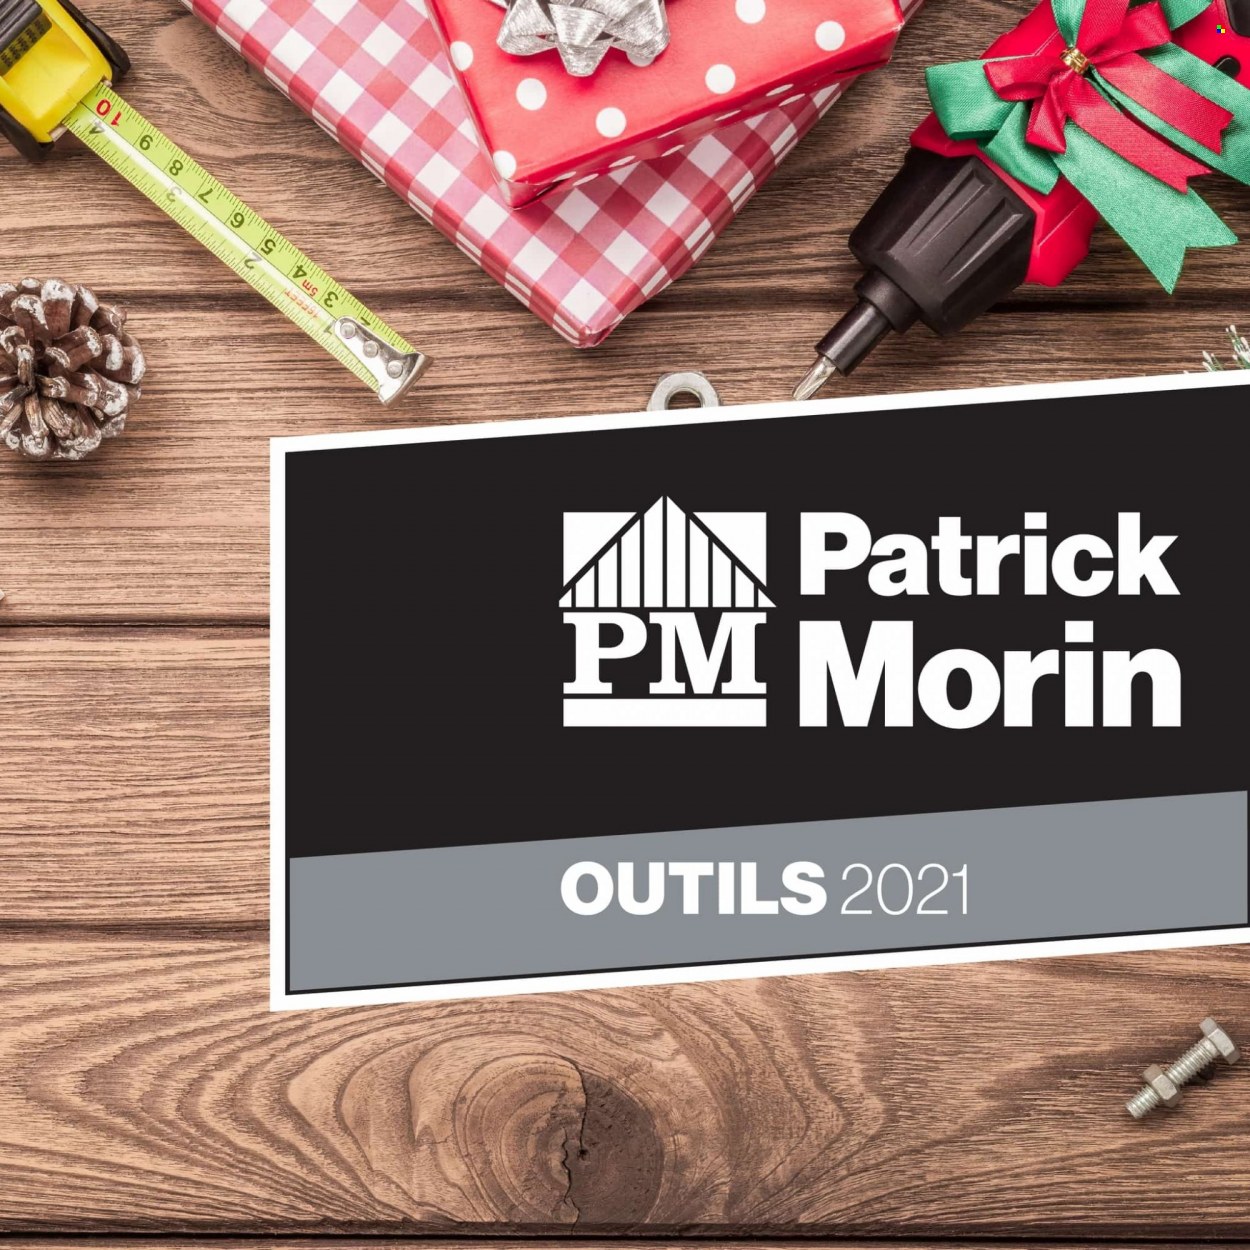 Patrick Morin flyer  - December 03, 2021 - December 31, 2021.